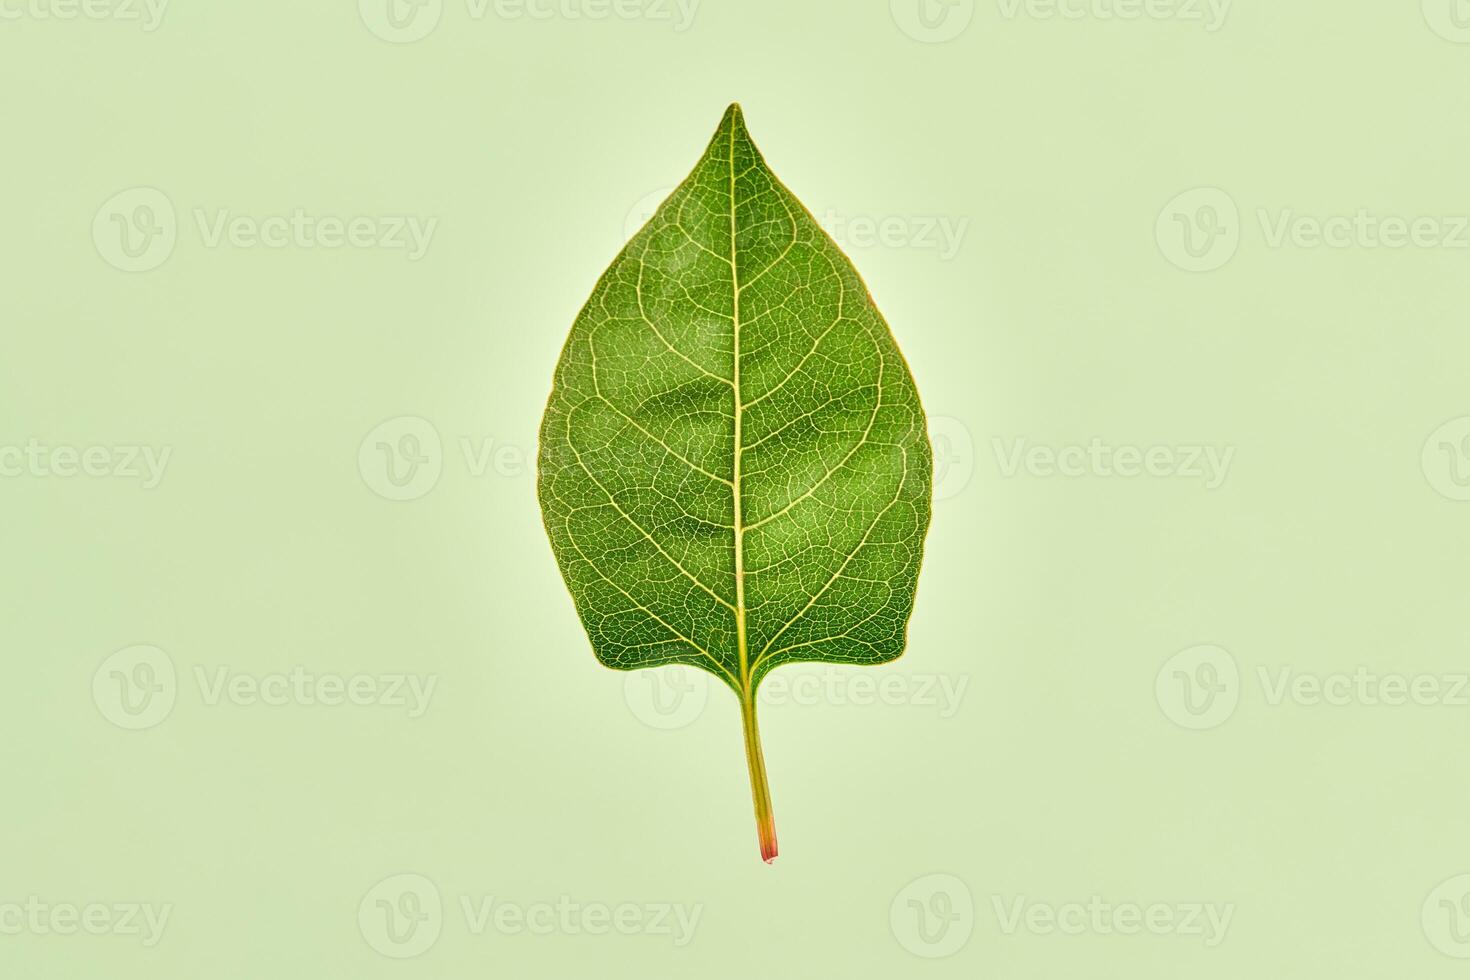 een groen reynoutria blad Aan licht groen achtergrond, gedetailleerd macro van reynoutria japonica blad foto